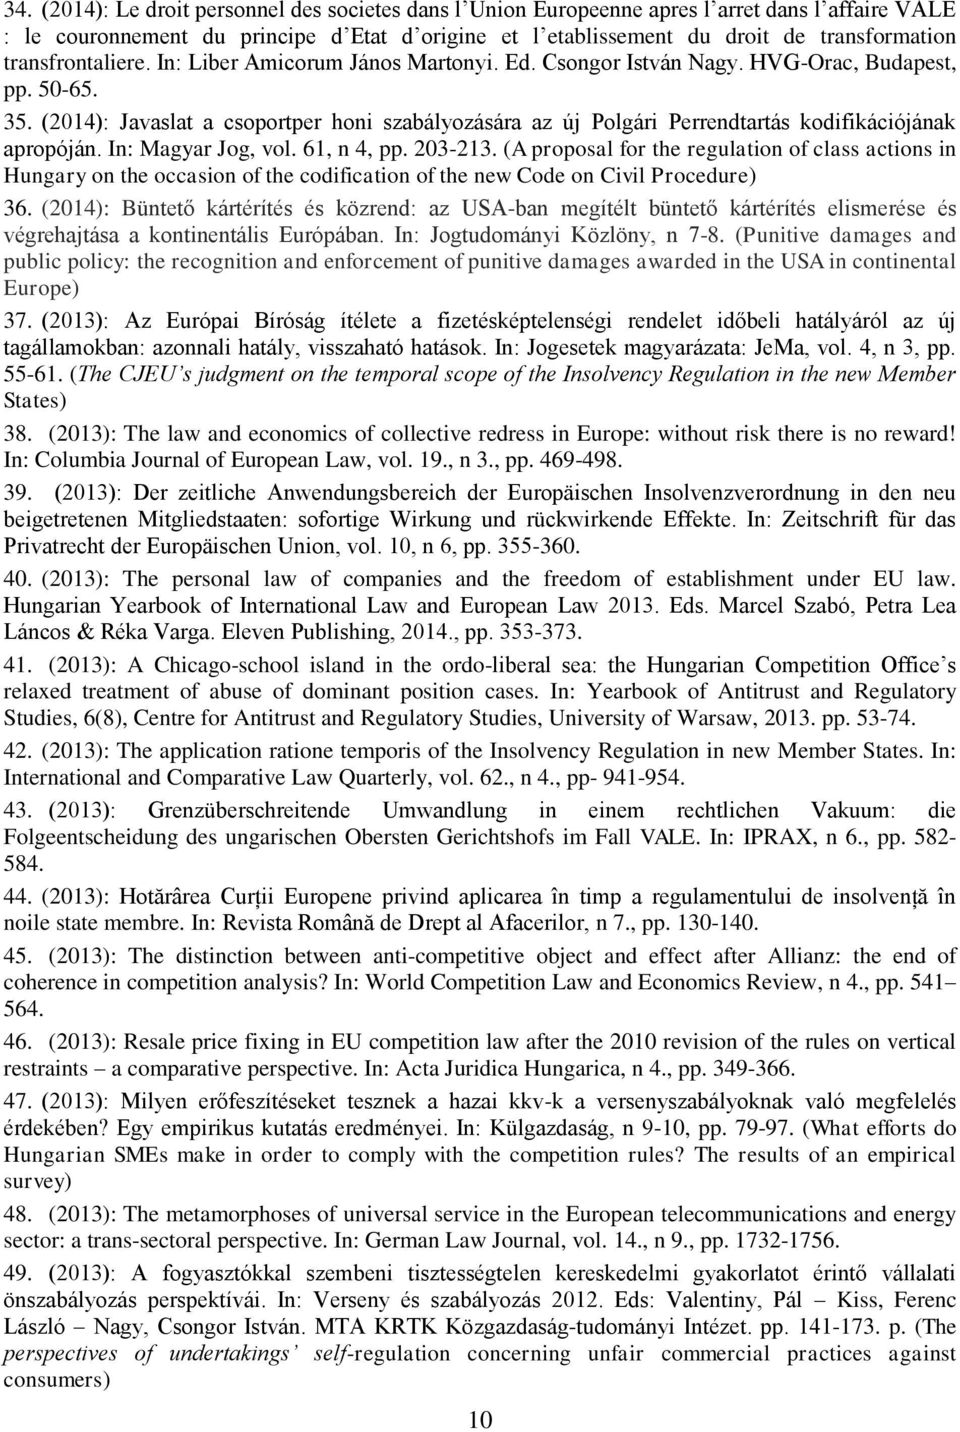 (2014): Javaslat a csoportper honi szabályozására az új Polgári Perrendtartás kodifikációjának apropóján. In: Magyar Jog, vol. 61, n 4, pp. 203-213.